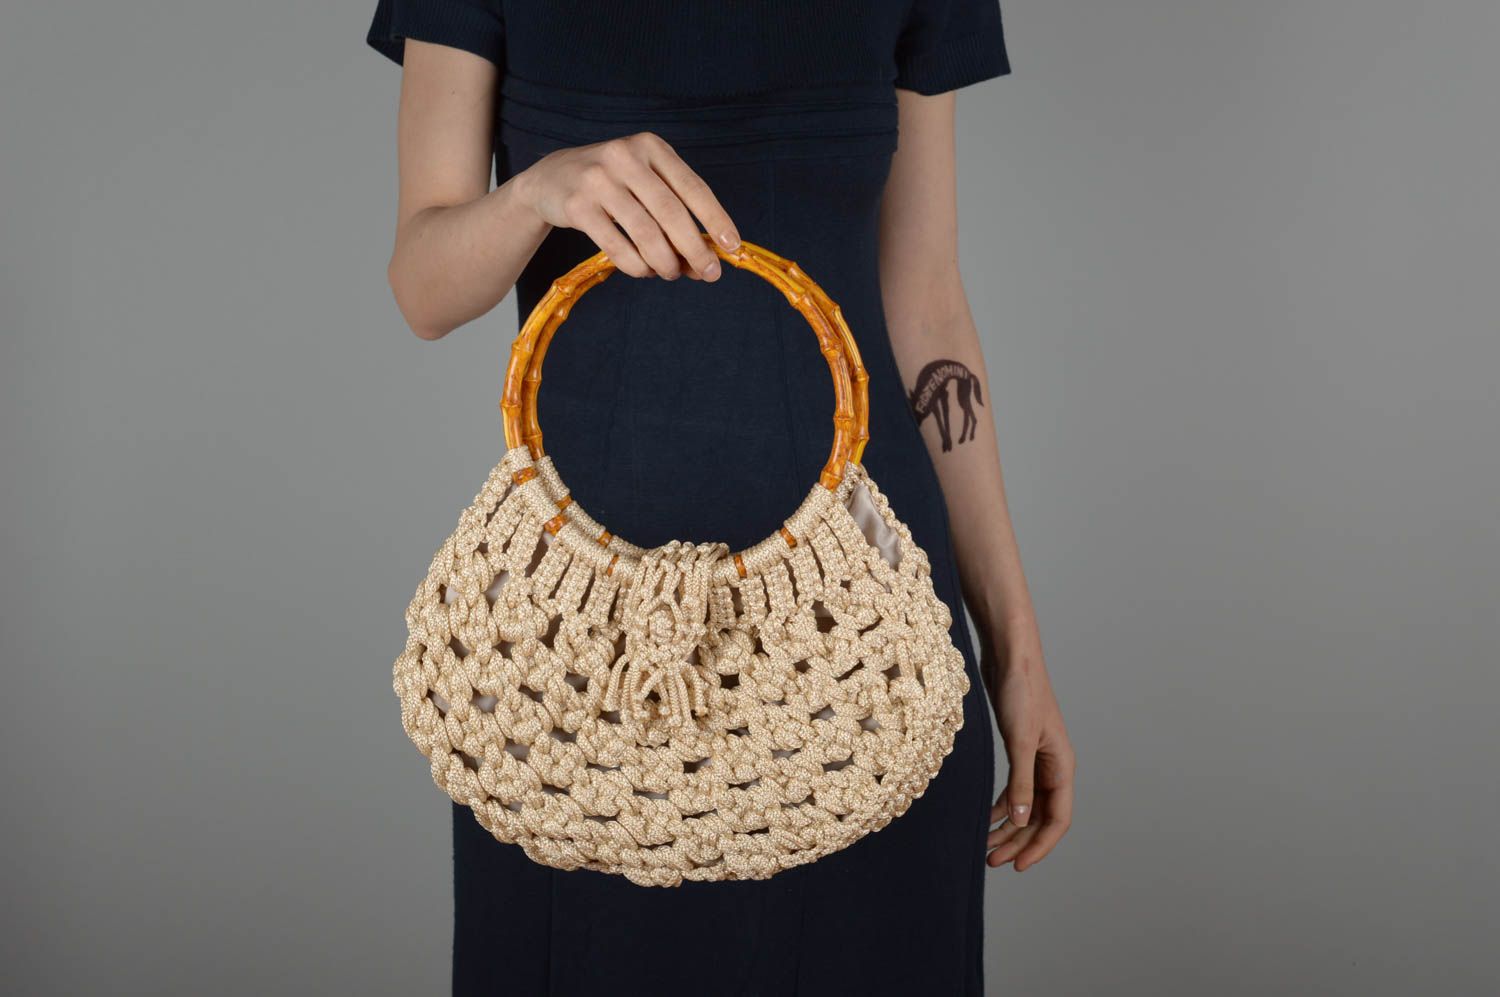 Unusual handmade woven macrame bag shoulder bag handbag design gifts for her photo 5